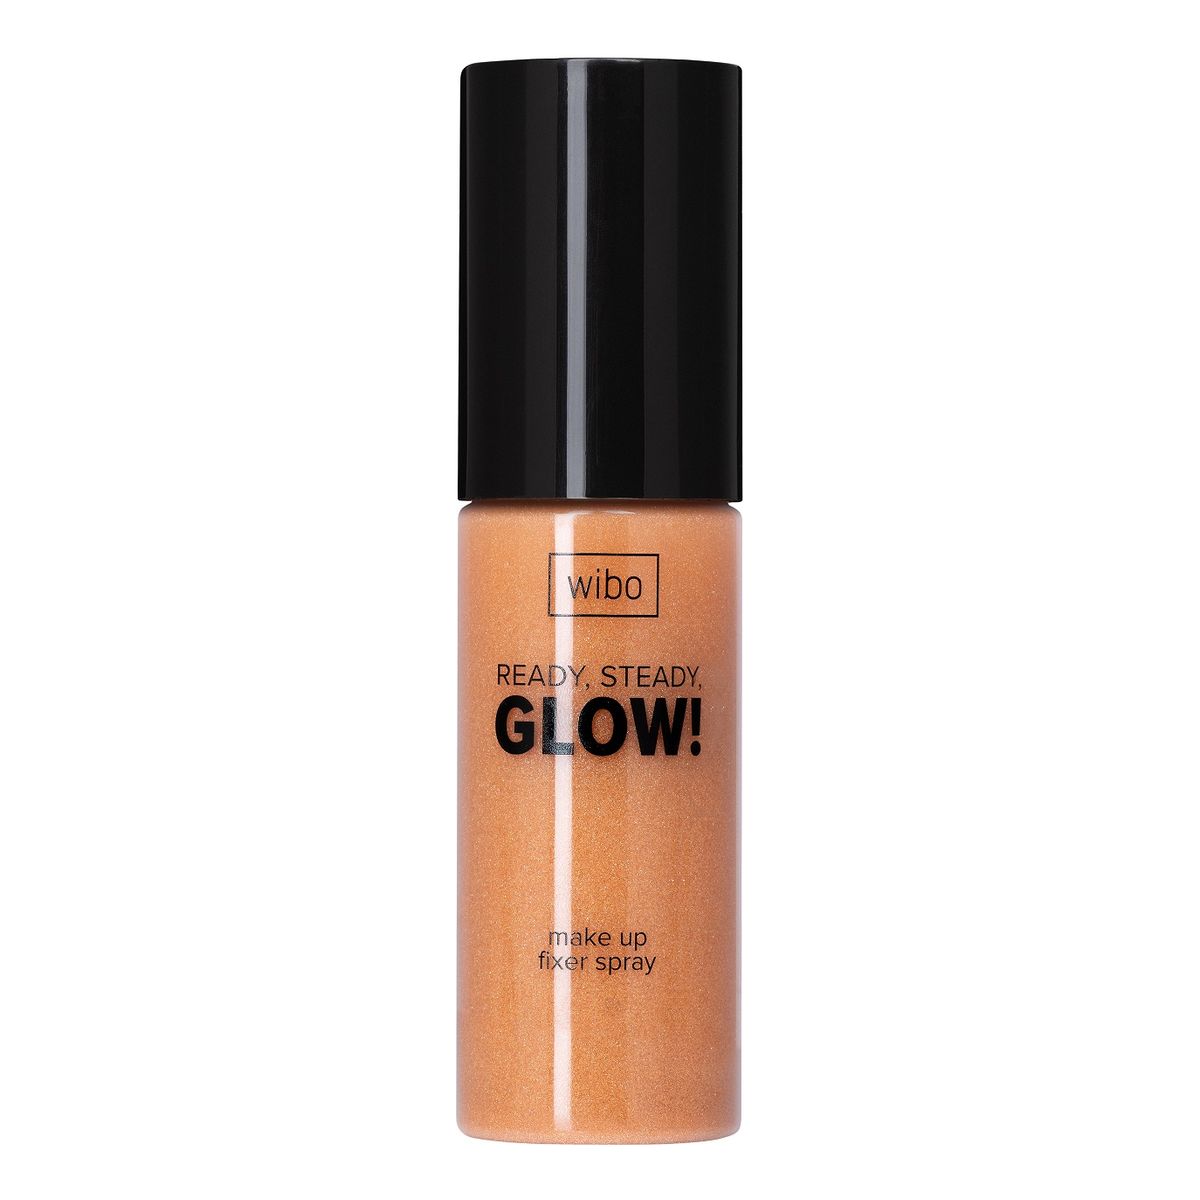 Wibo Ready steady glow make up fixer spray utrwalacz do makijażu 50ml